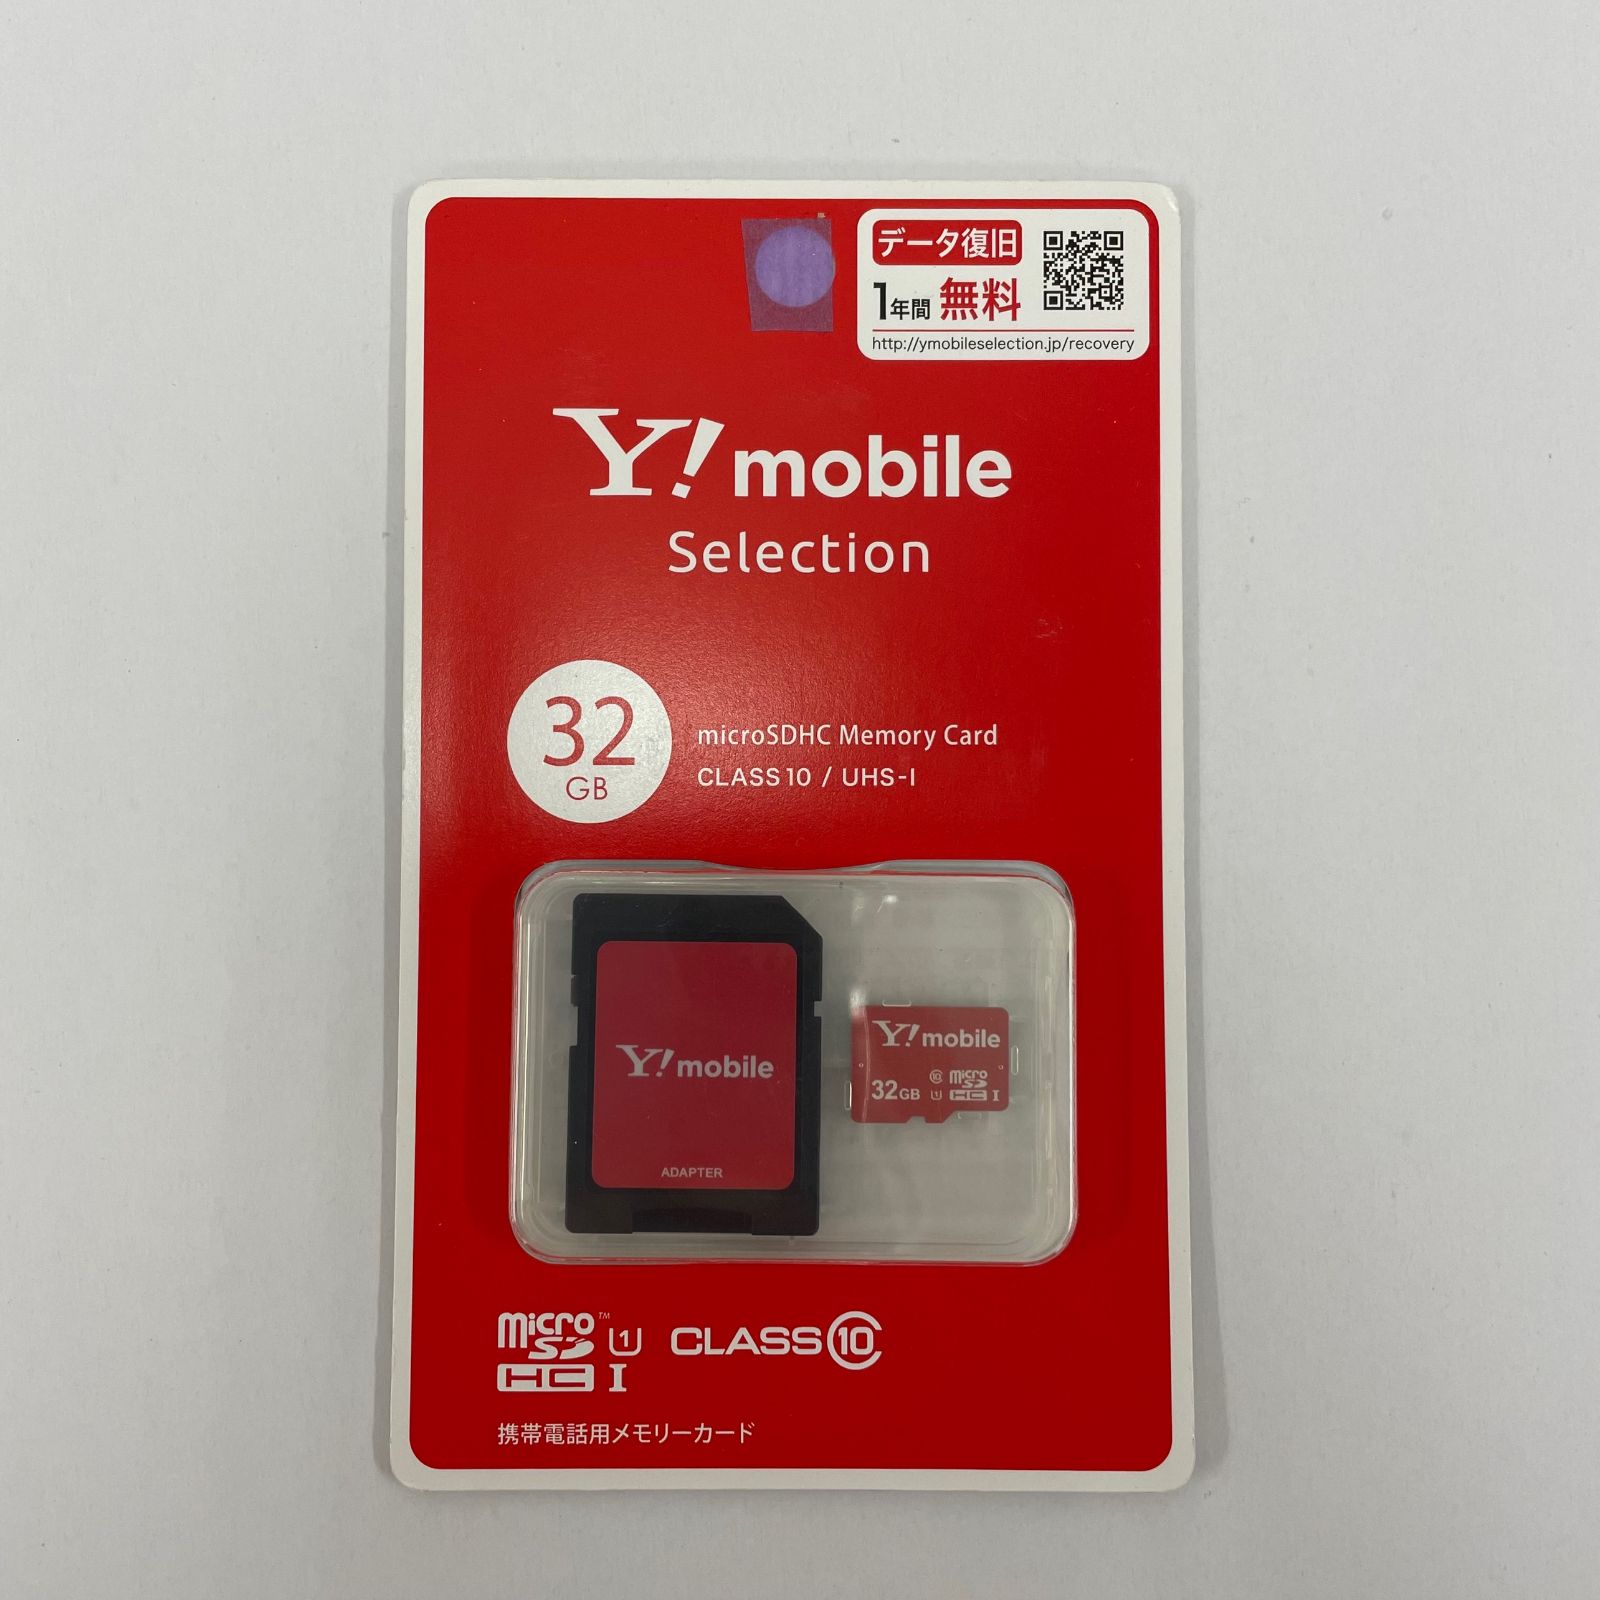 MicroSDメモリーカード マイクロ SDカード 容量16GB　Class10　MSD-16G